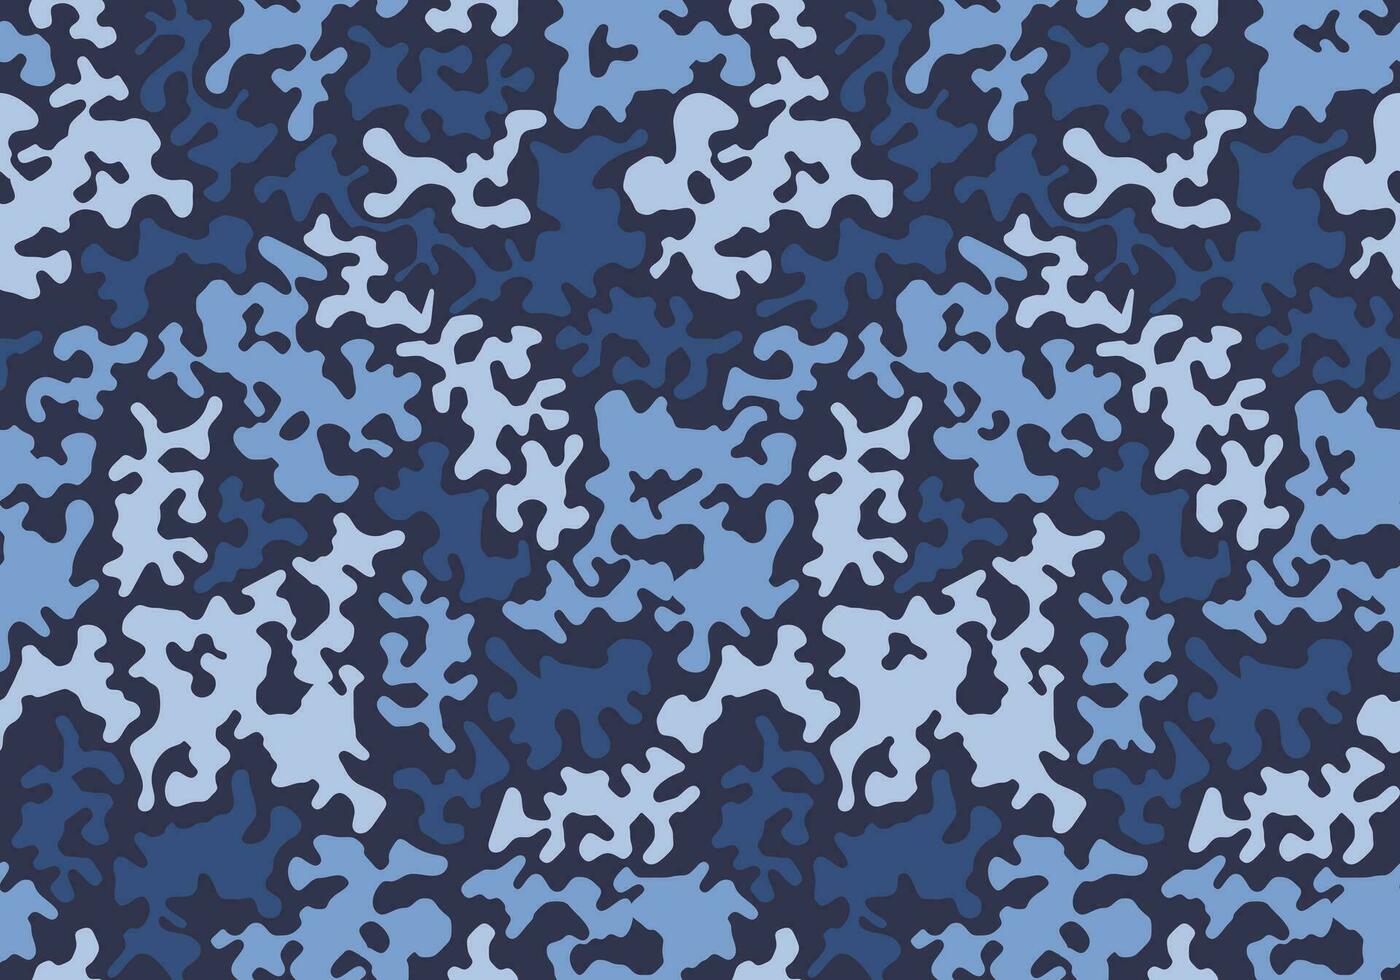 militär textil- av kamouflage för enhetlig. como tyg texturerad material. vektor